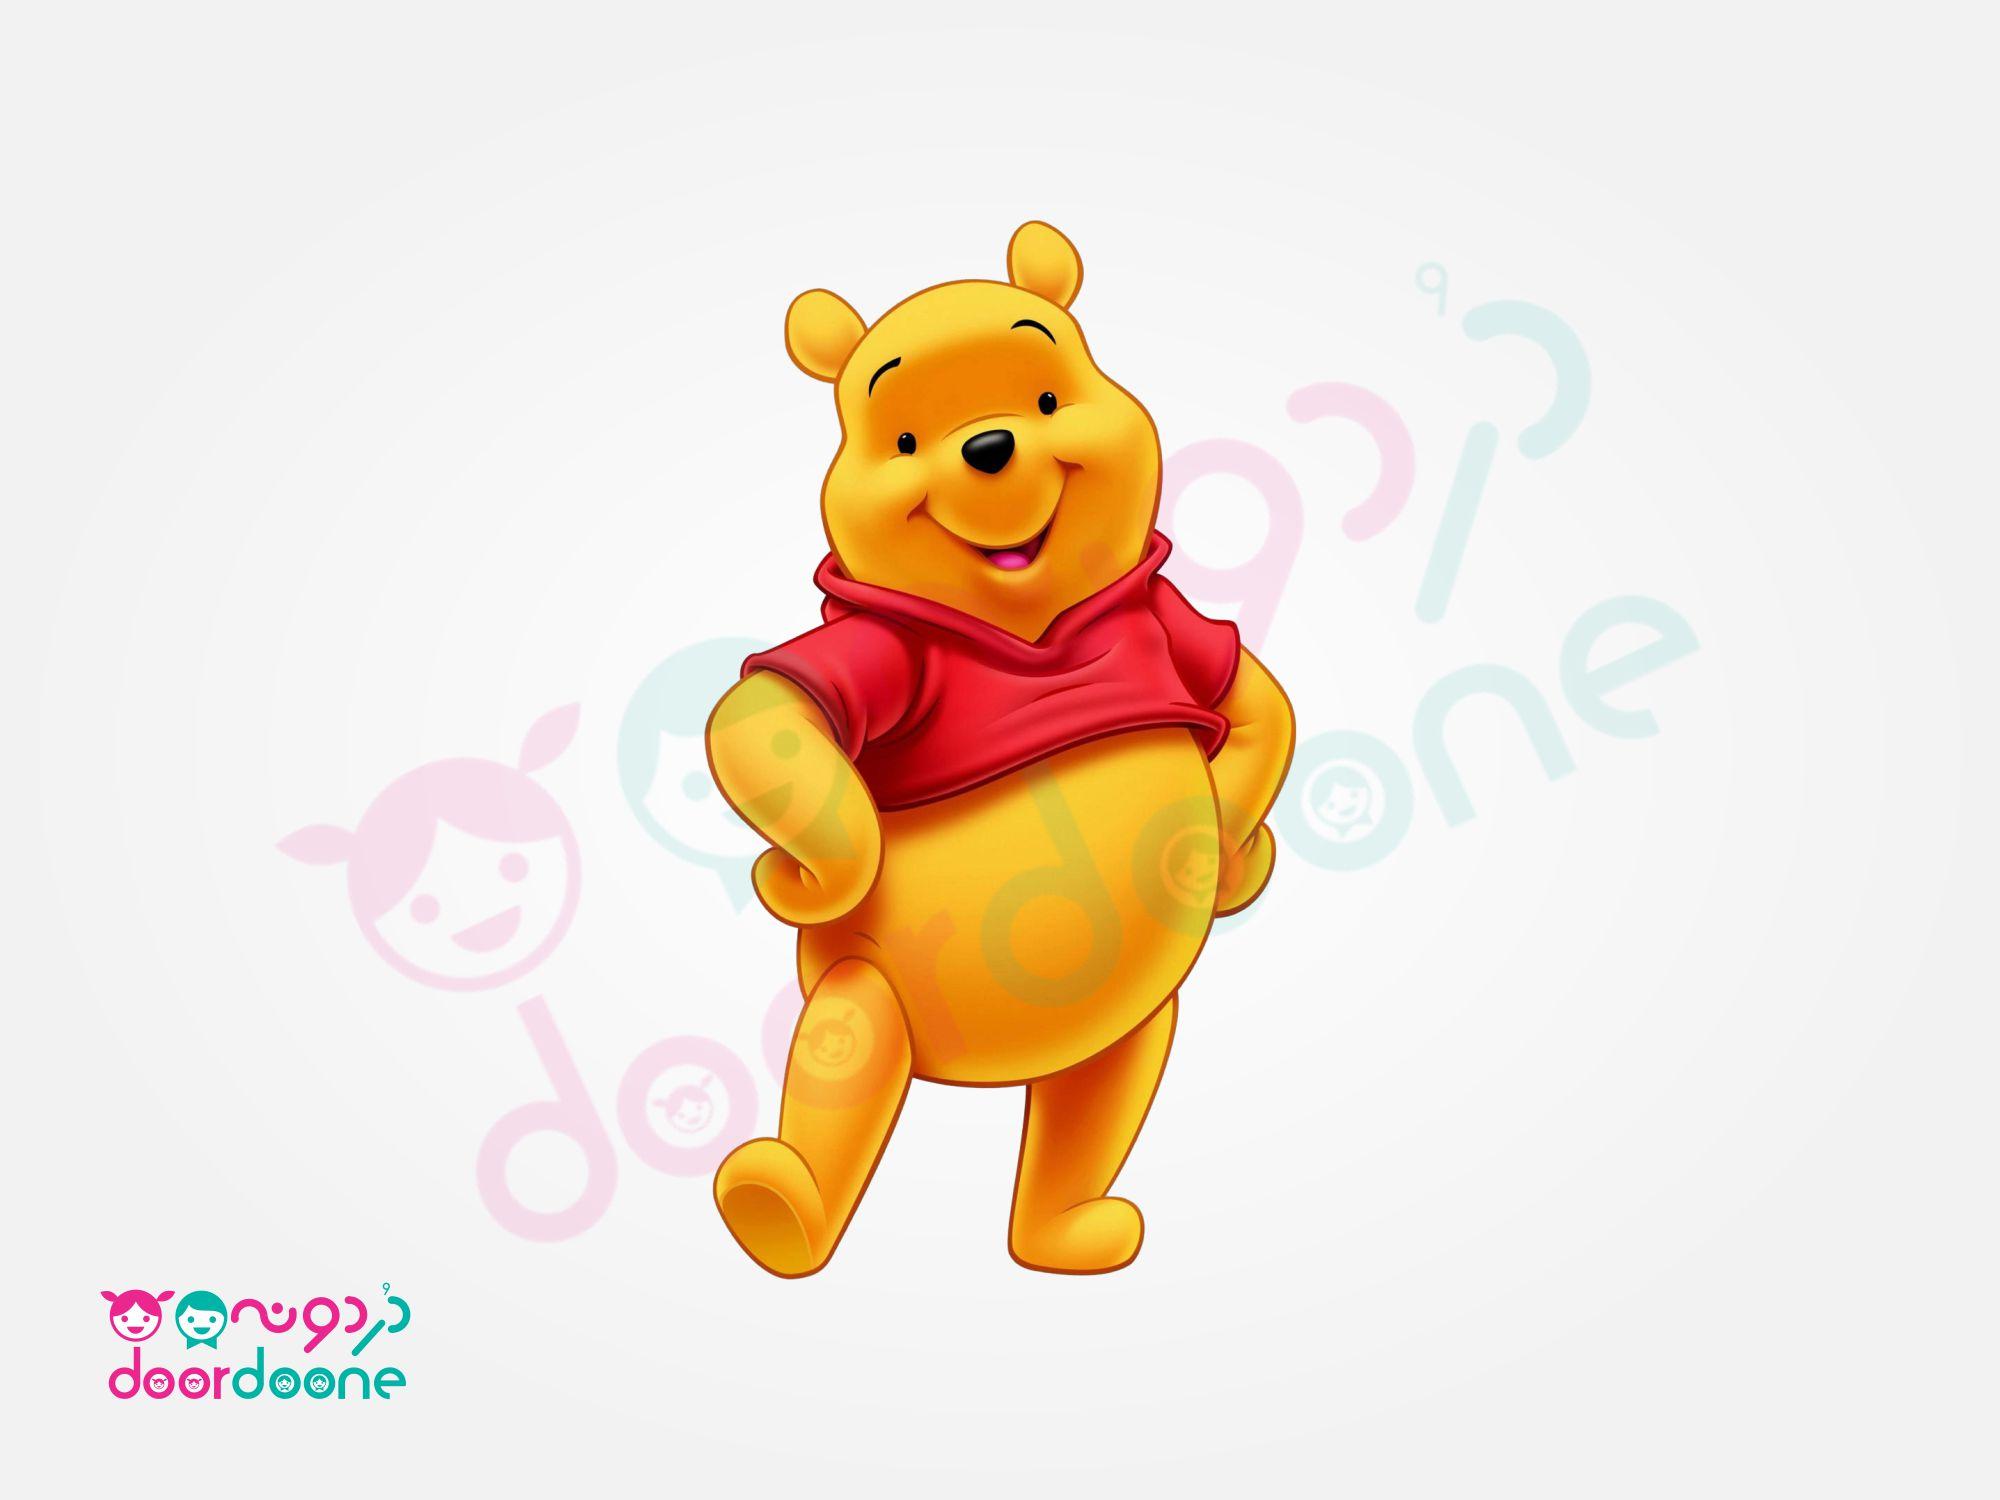 استند وينی پو (Winnie the Pooh) ارتفاع 70 سانتیمتر